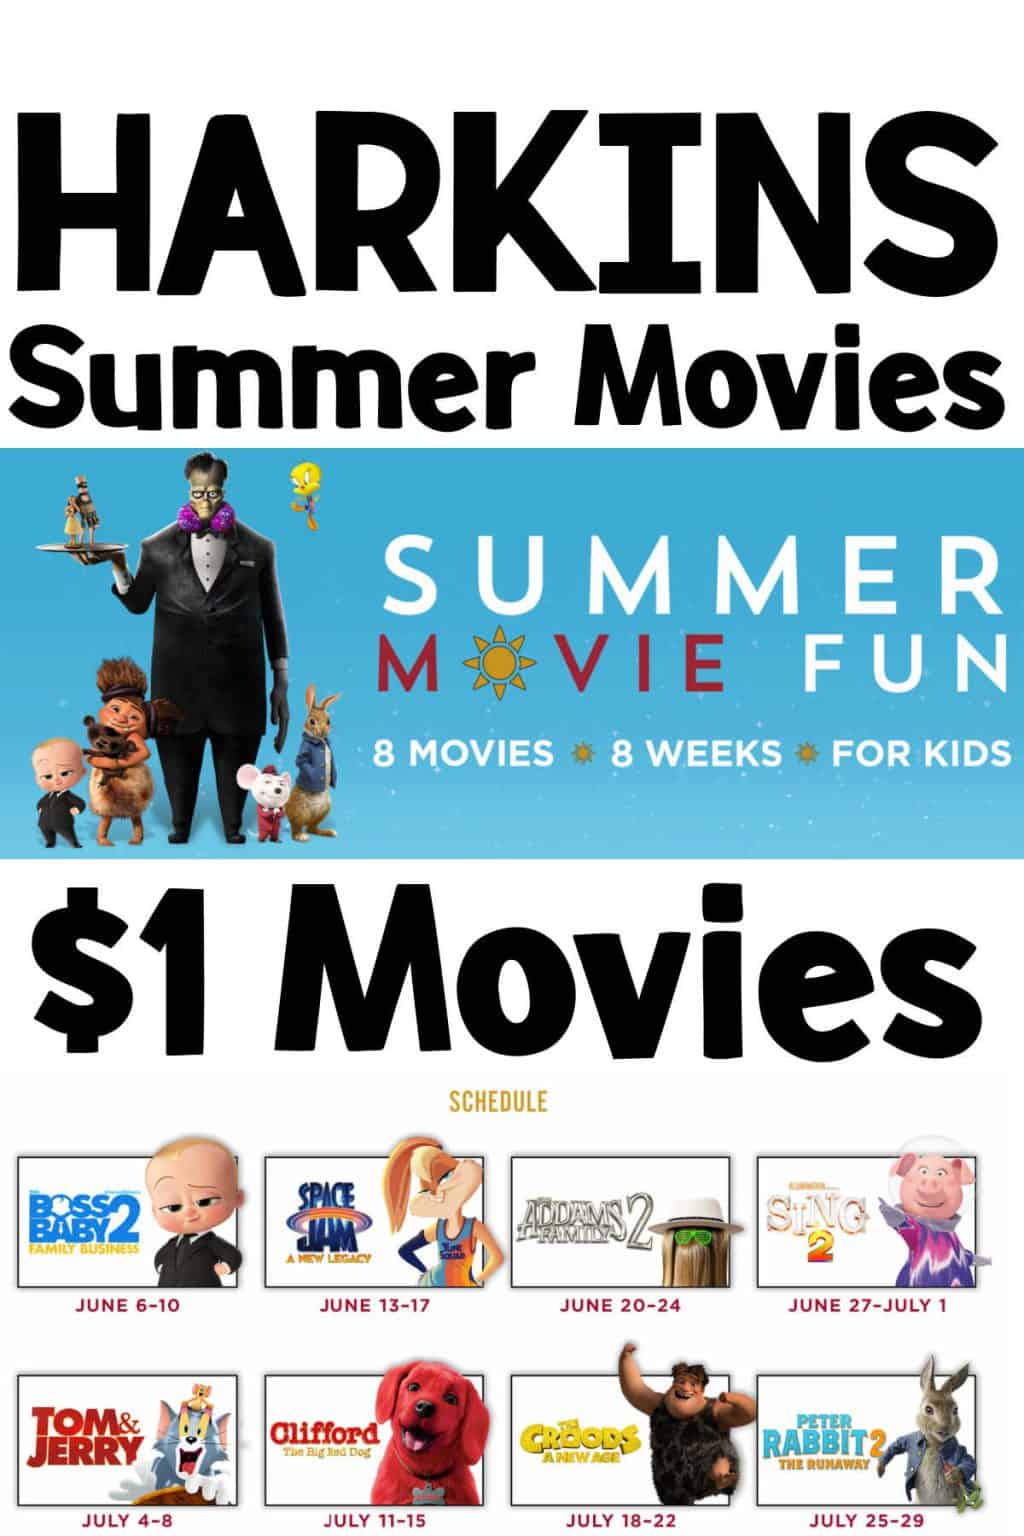 Harkins Summer Movies Program for Kids • MidgetMomma